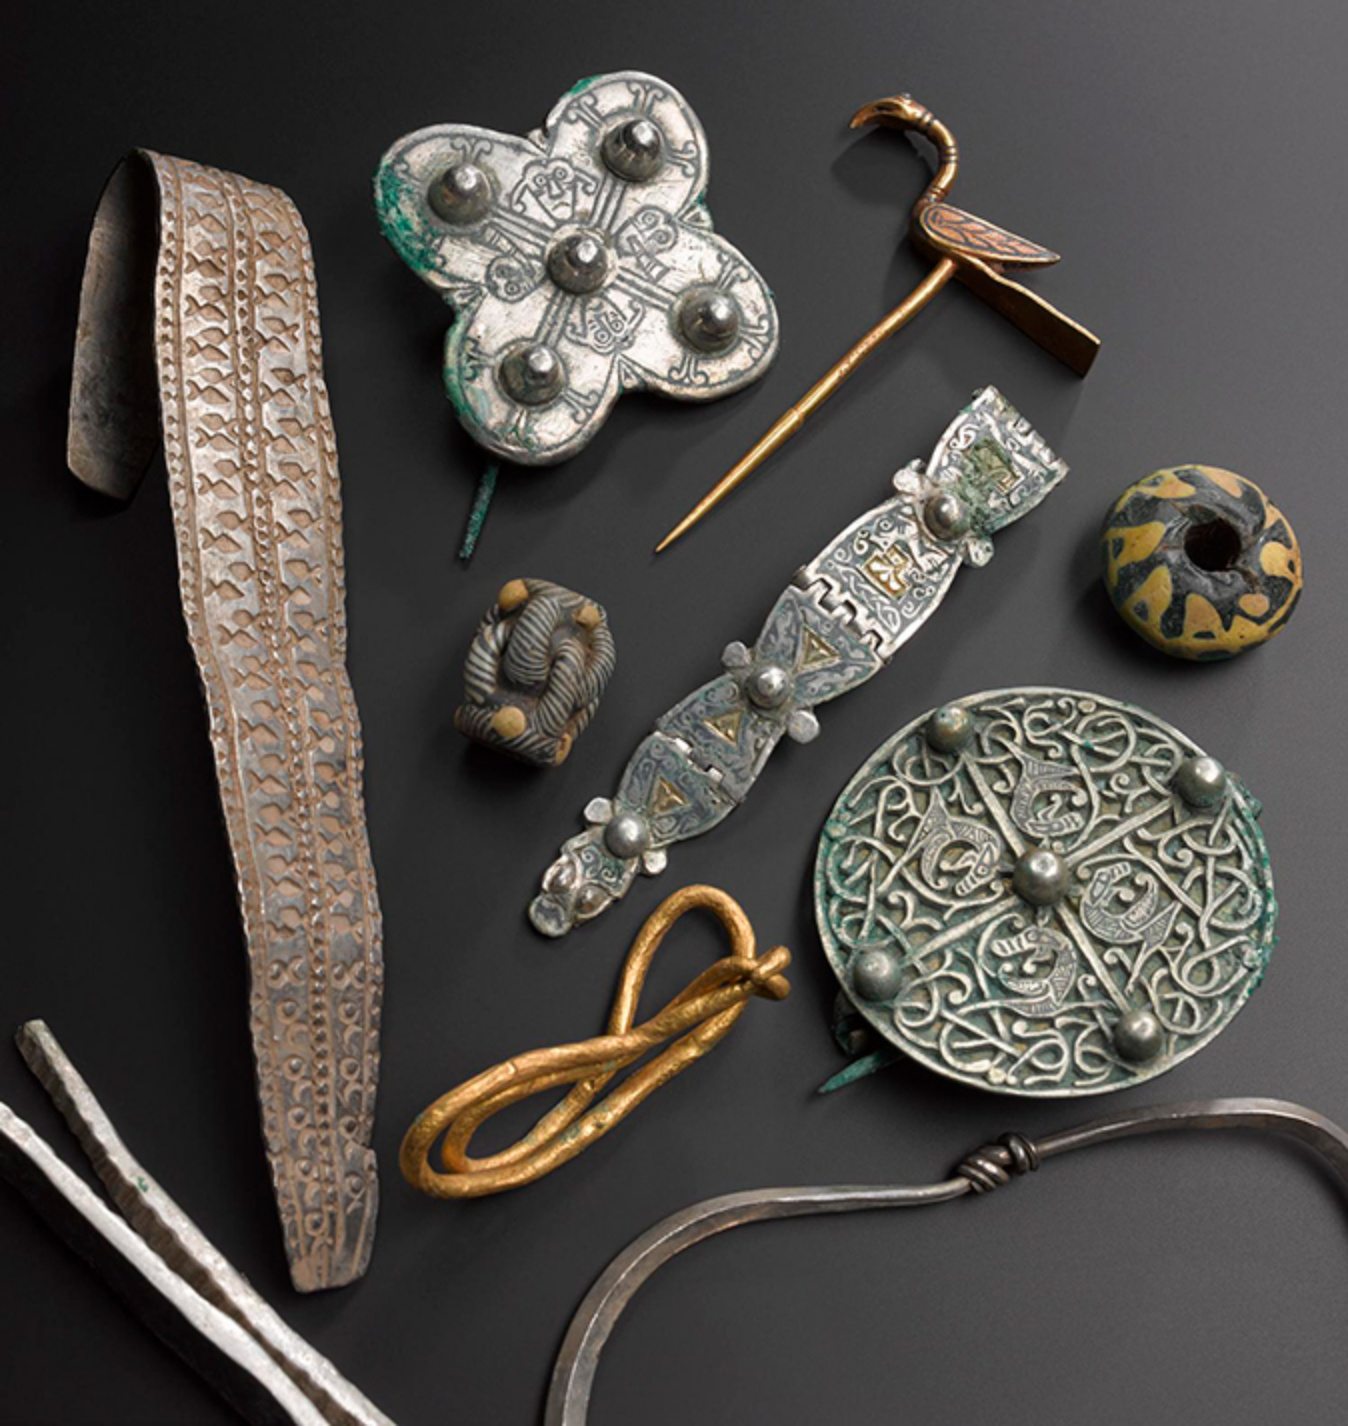 Een selectie van objecten uit de Galloway Hoard uit de Vikingtijd.